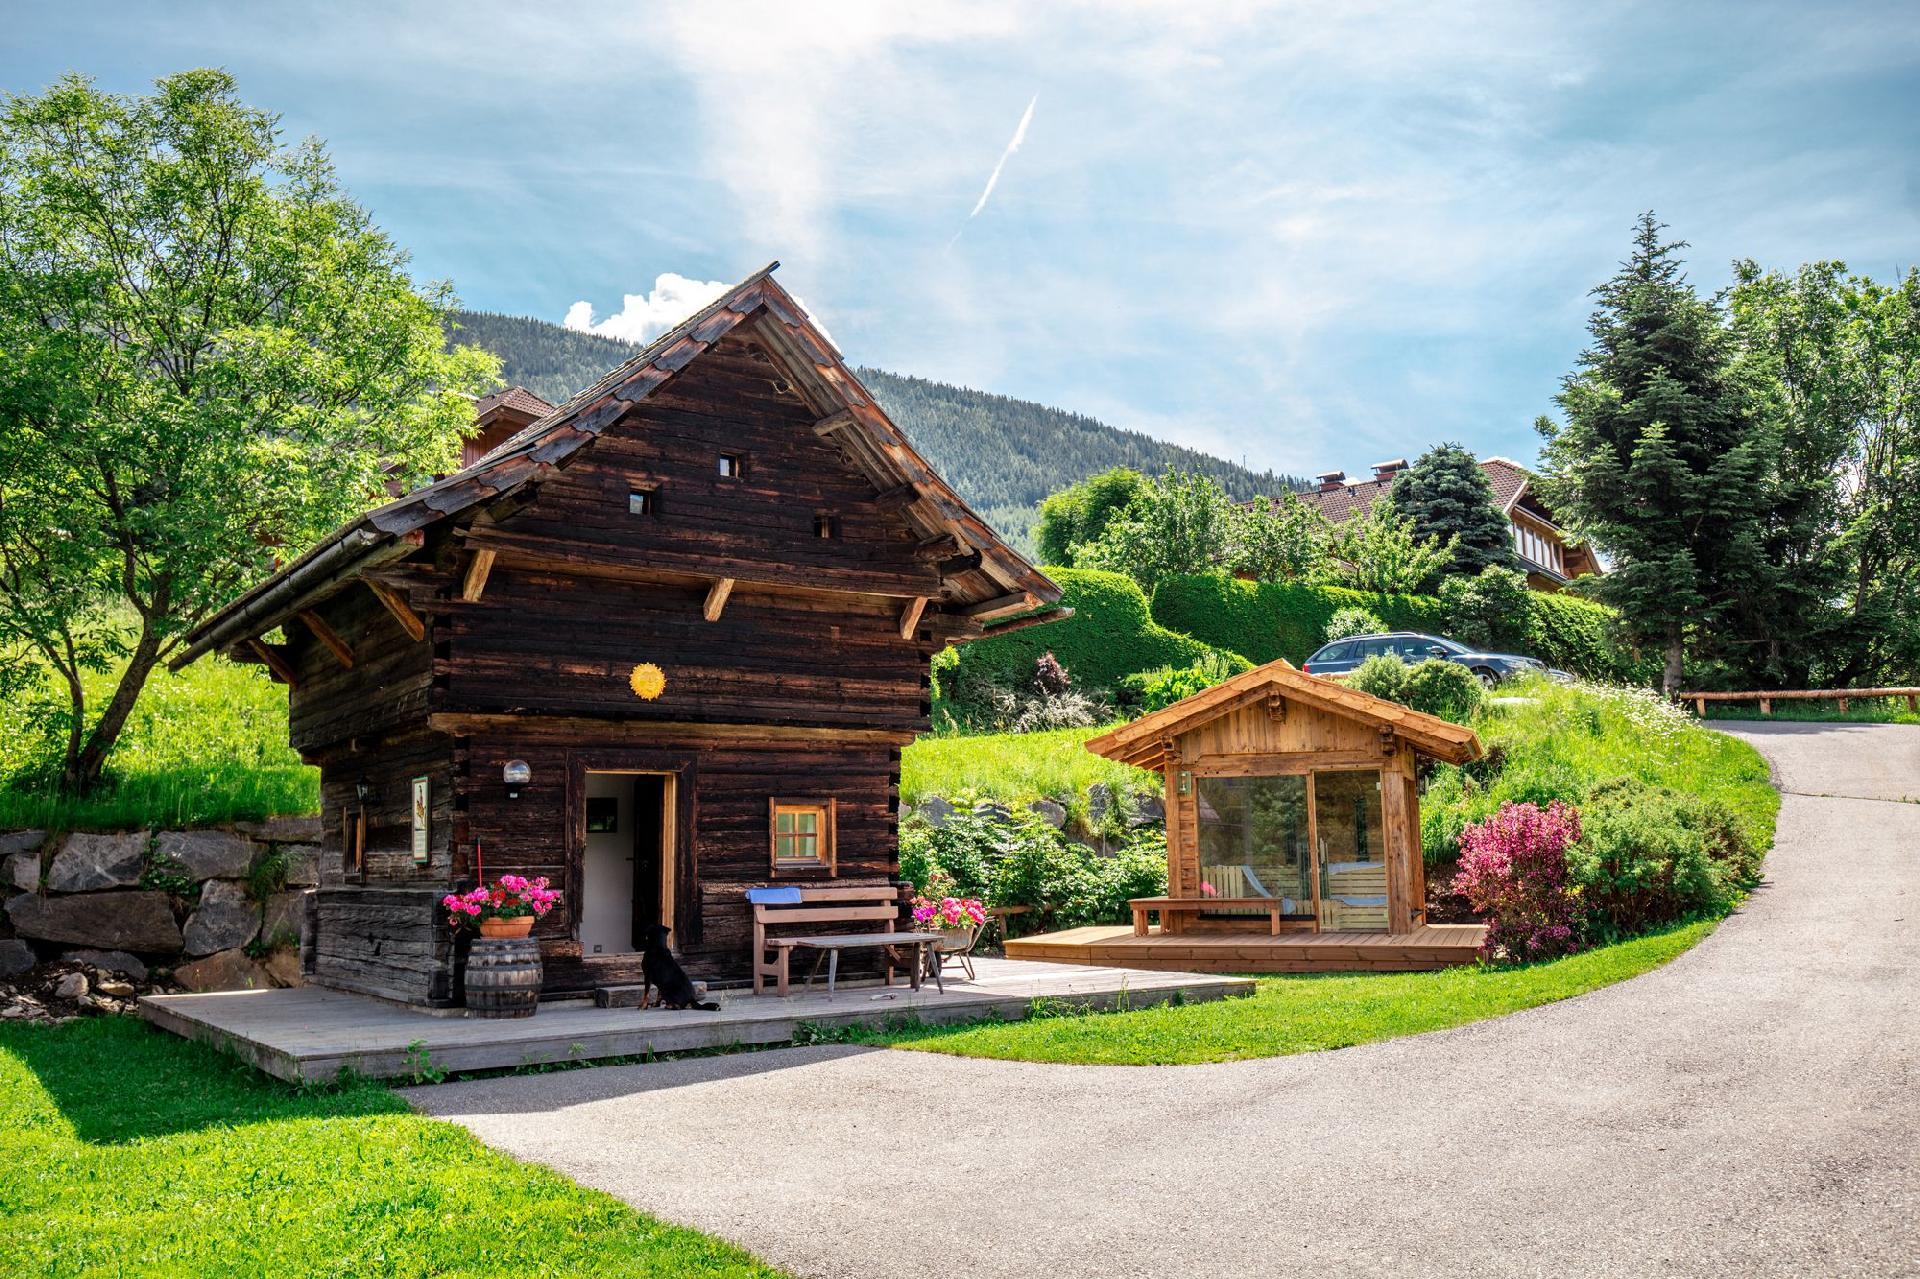 Ferienhaus in Aschbach mit Grill, Terrasse und Gar  in Ãsterreich